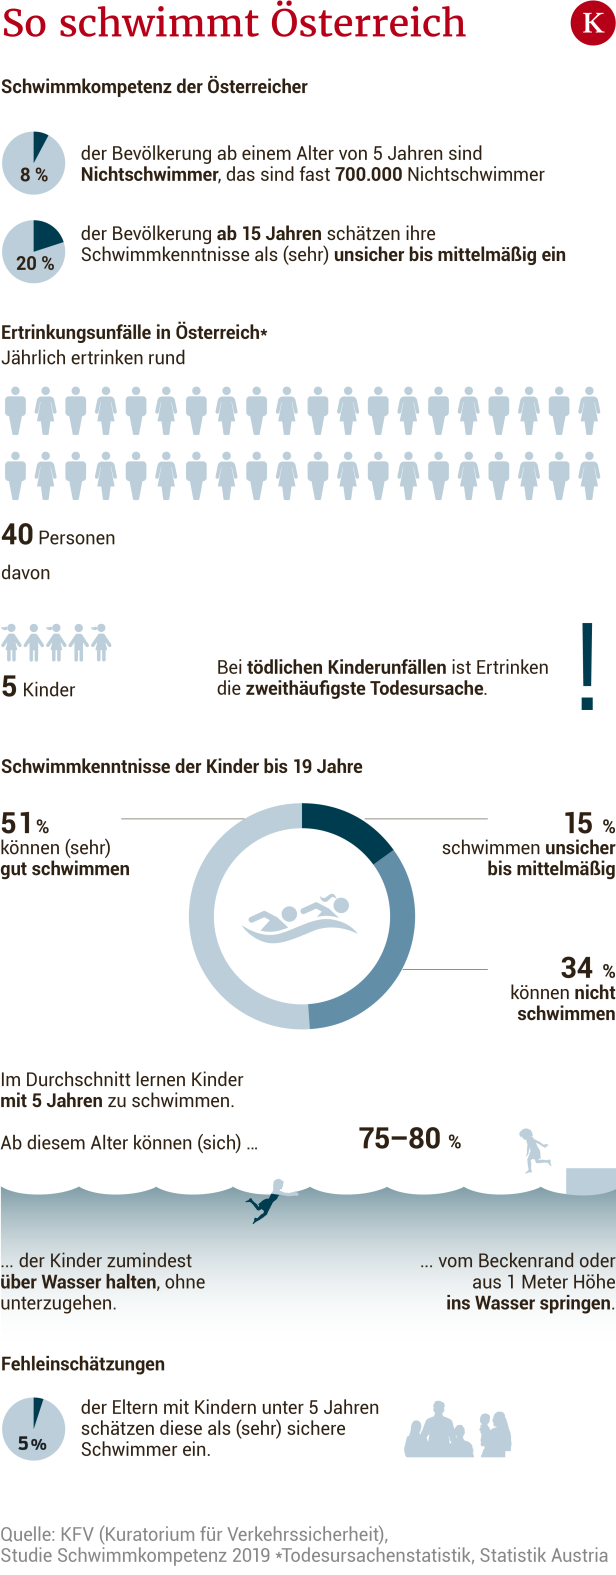 Bädersterben und 700.000 Nichtschwimmer: Land unter in Österreich